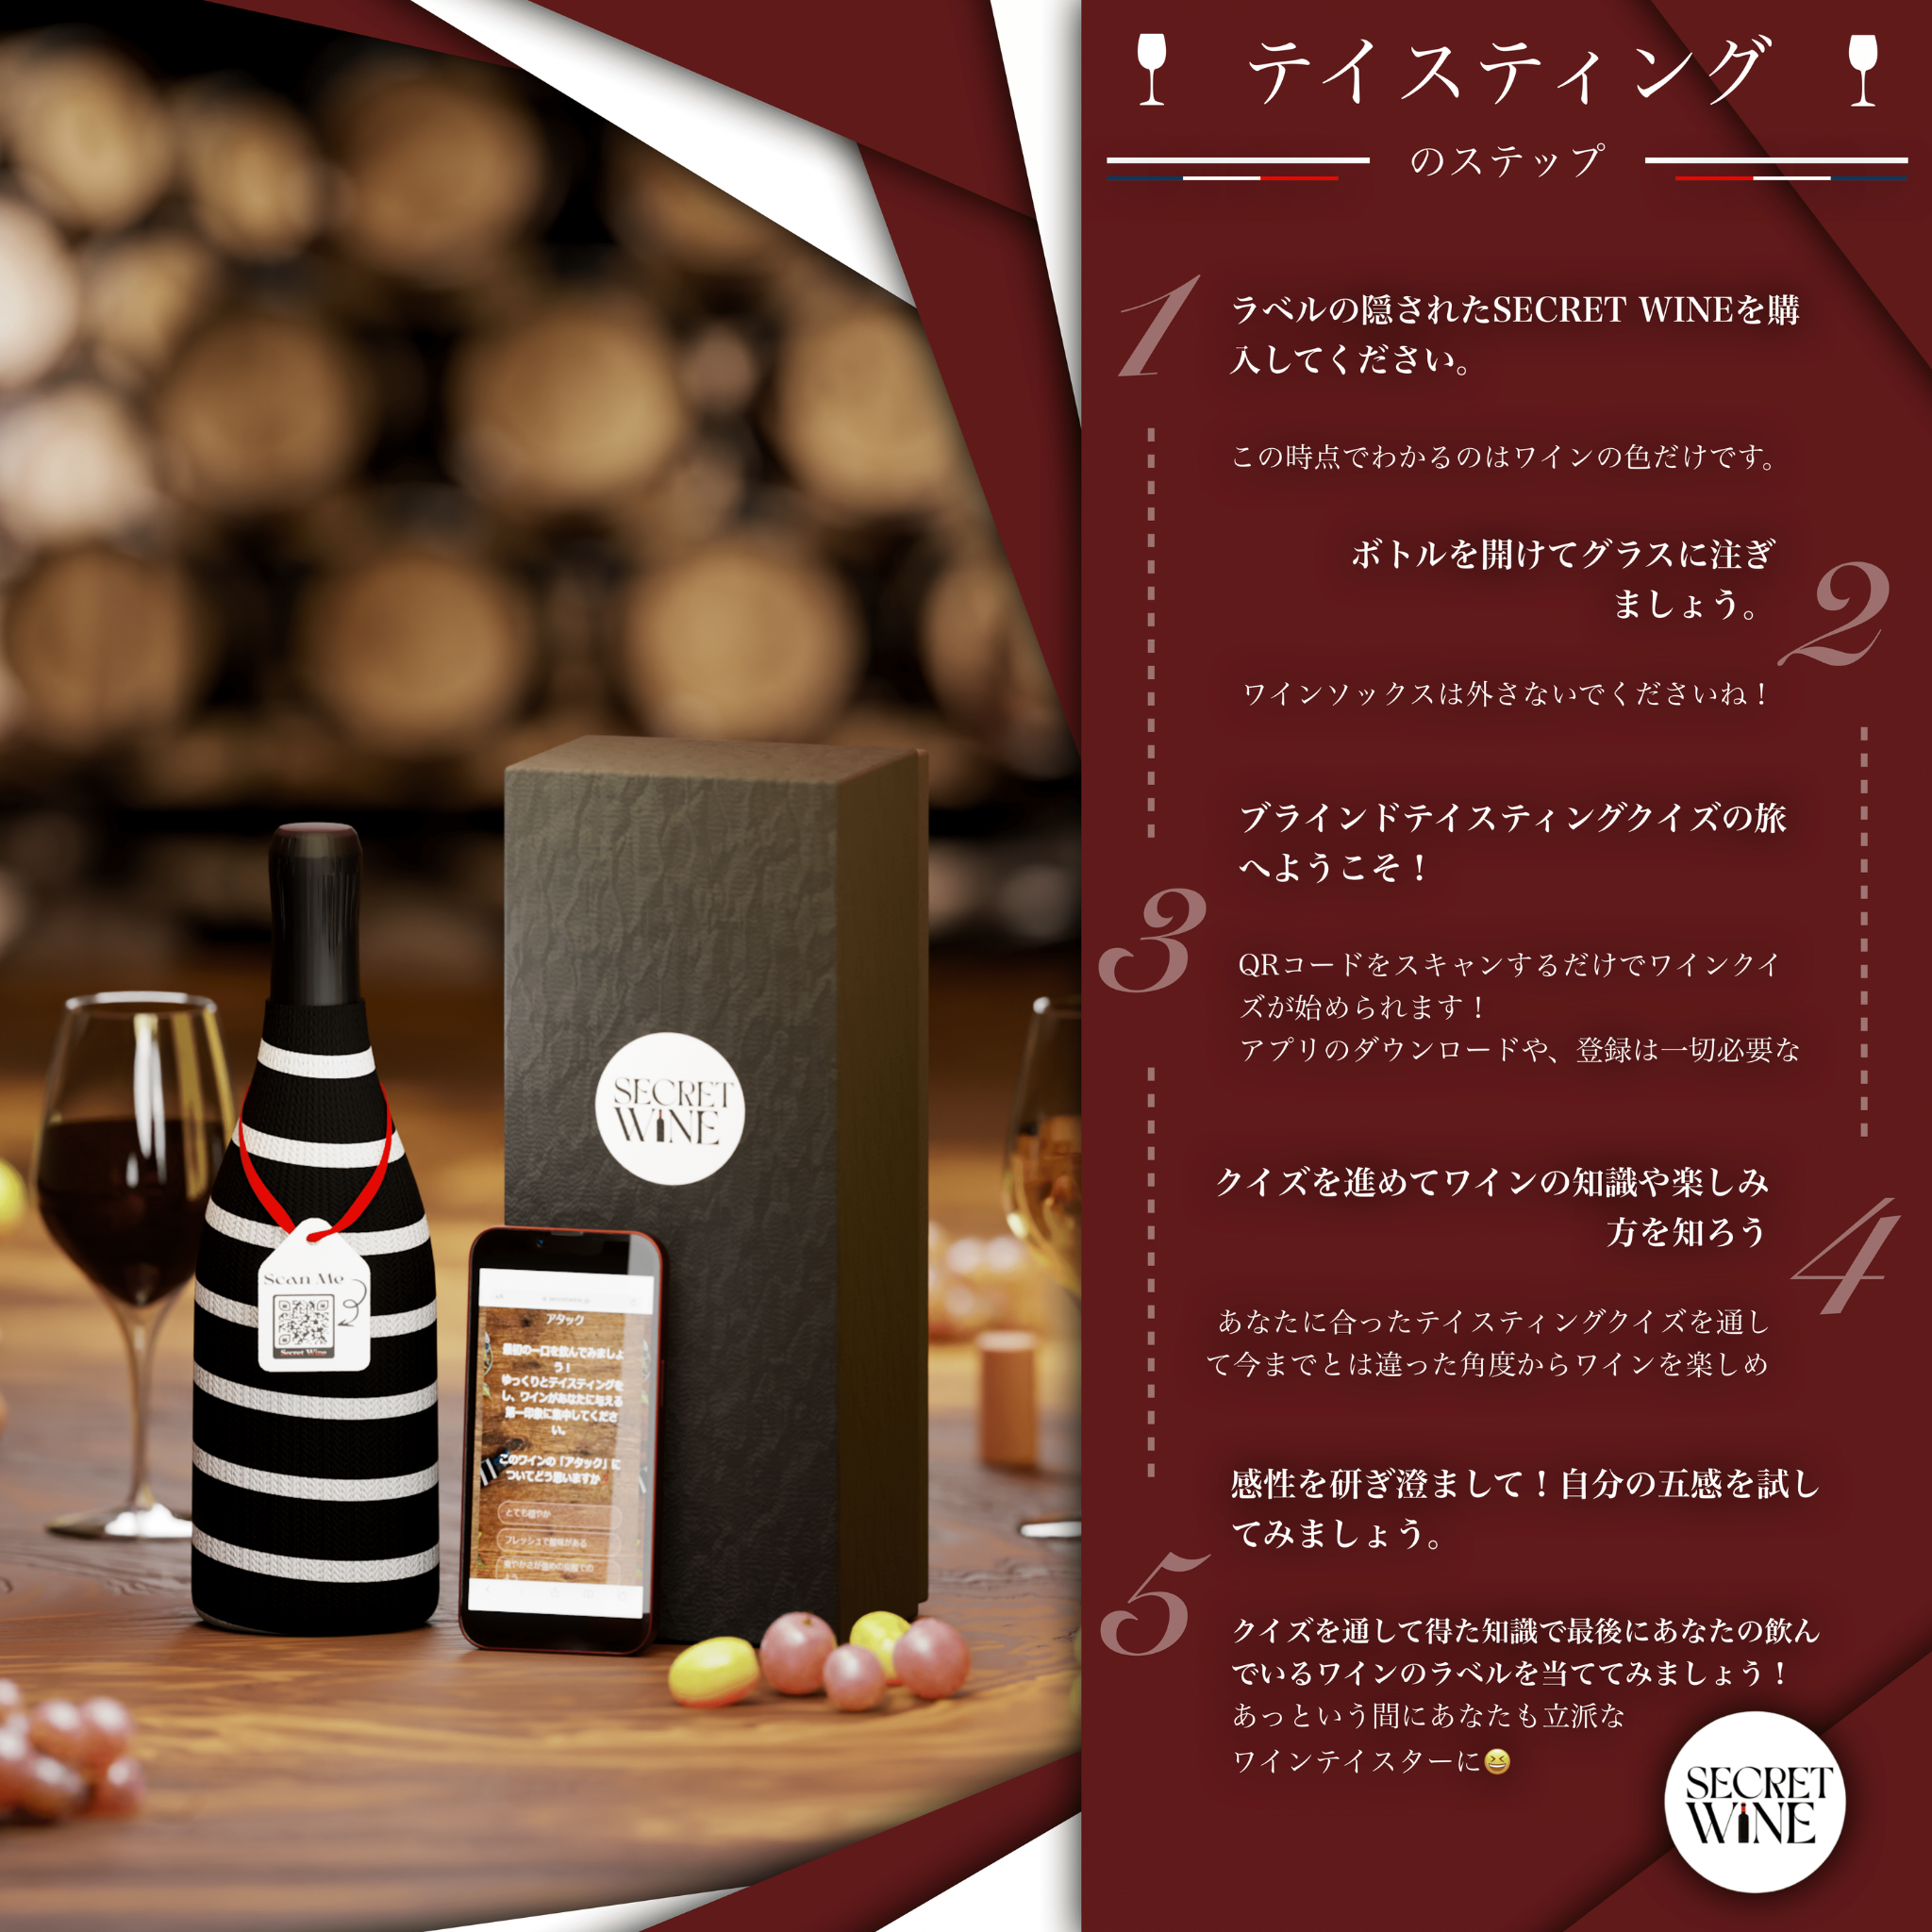 ブラインドワインテイスティングキット - Secret Wine 🍷